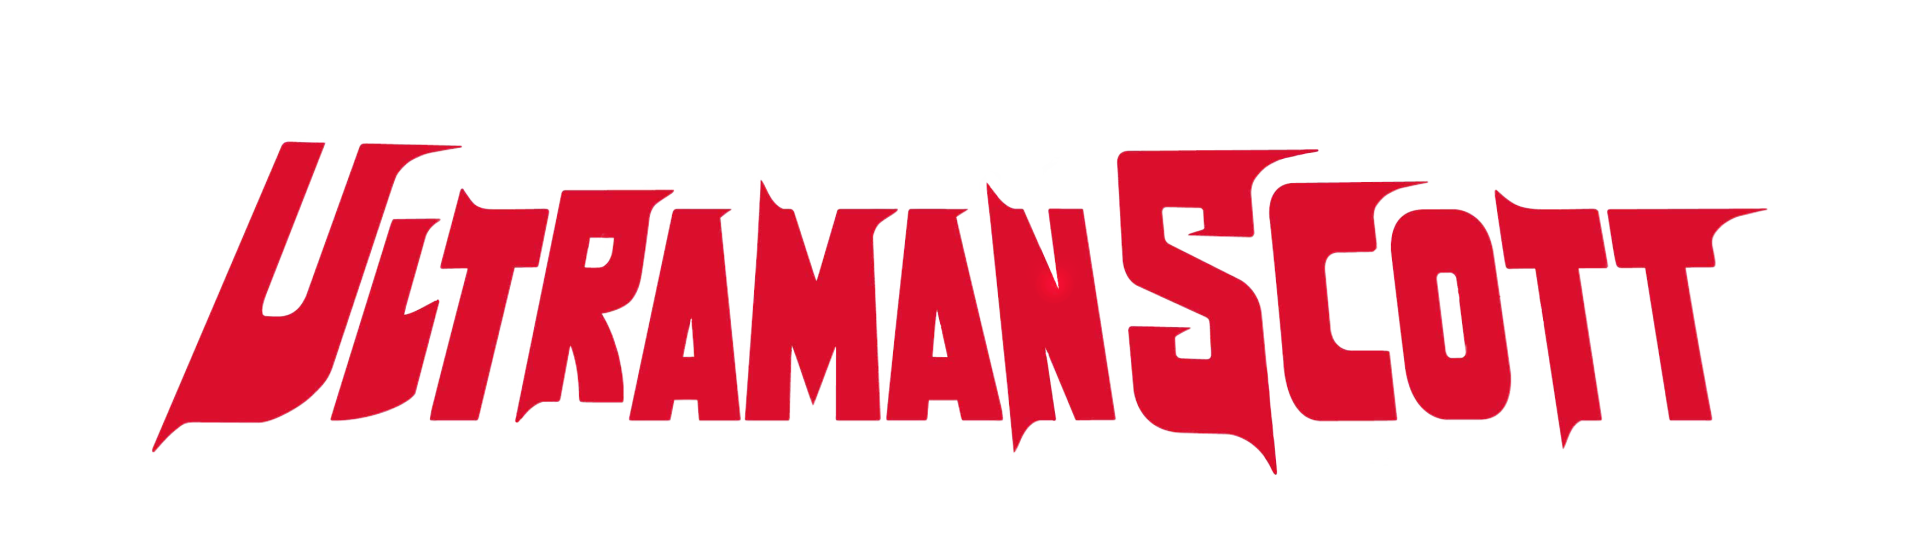 Ultraman Scott